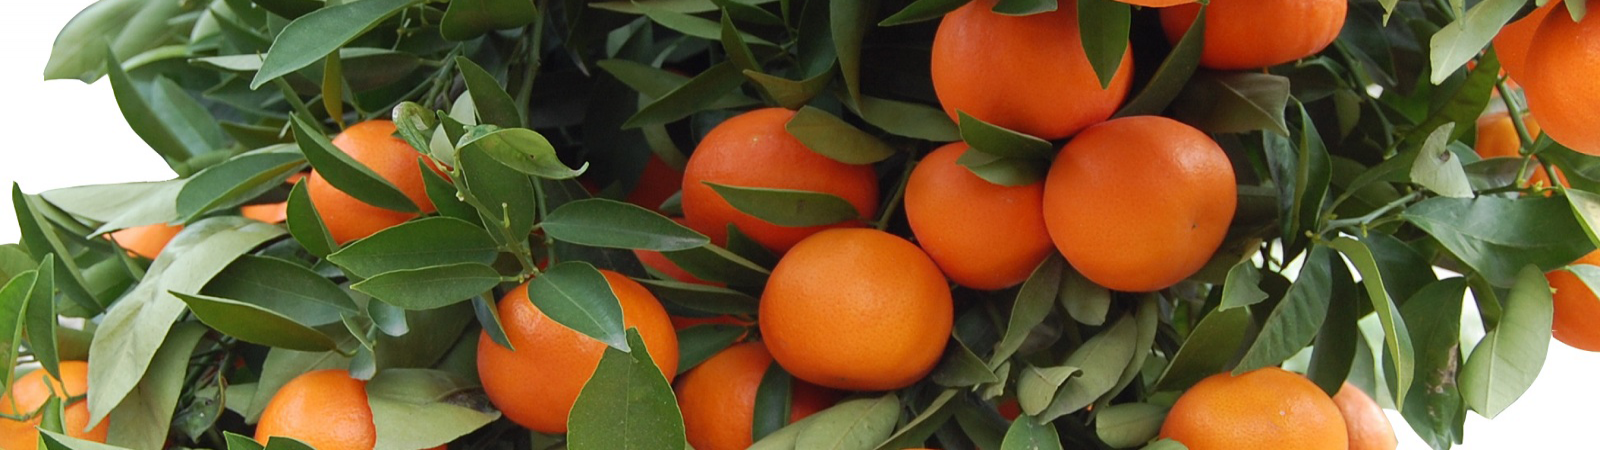 Naranjas y mandarinas naturales